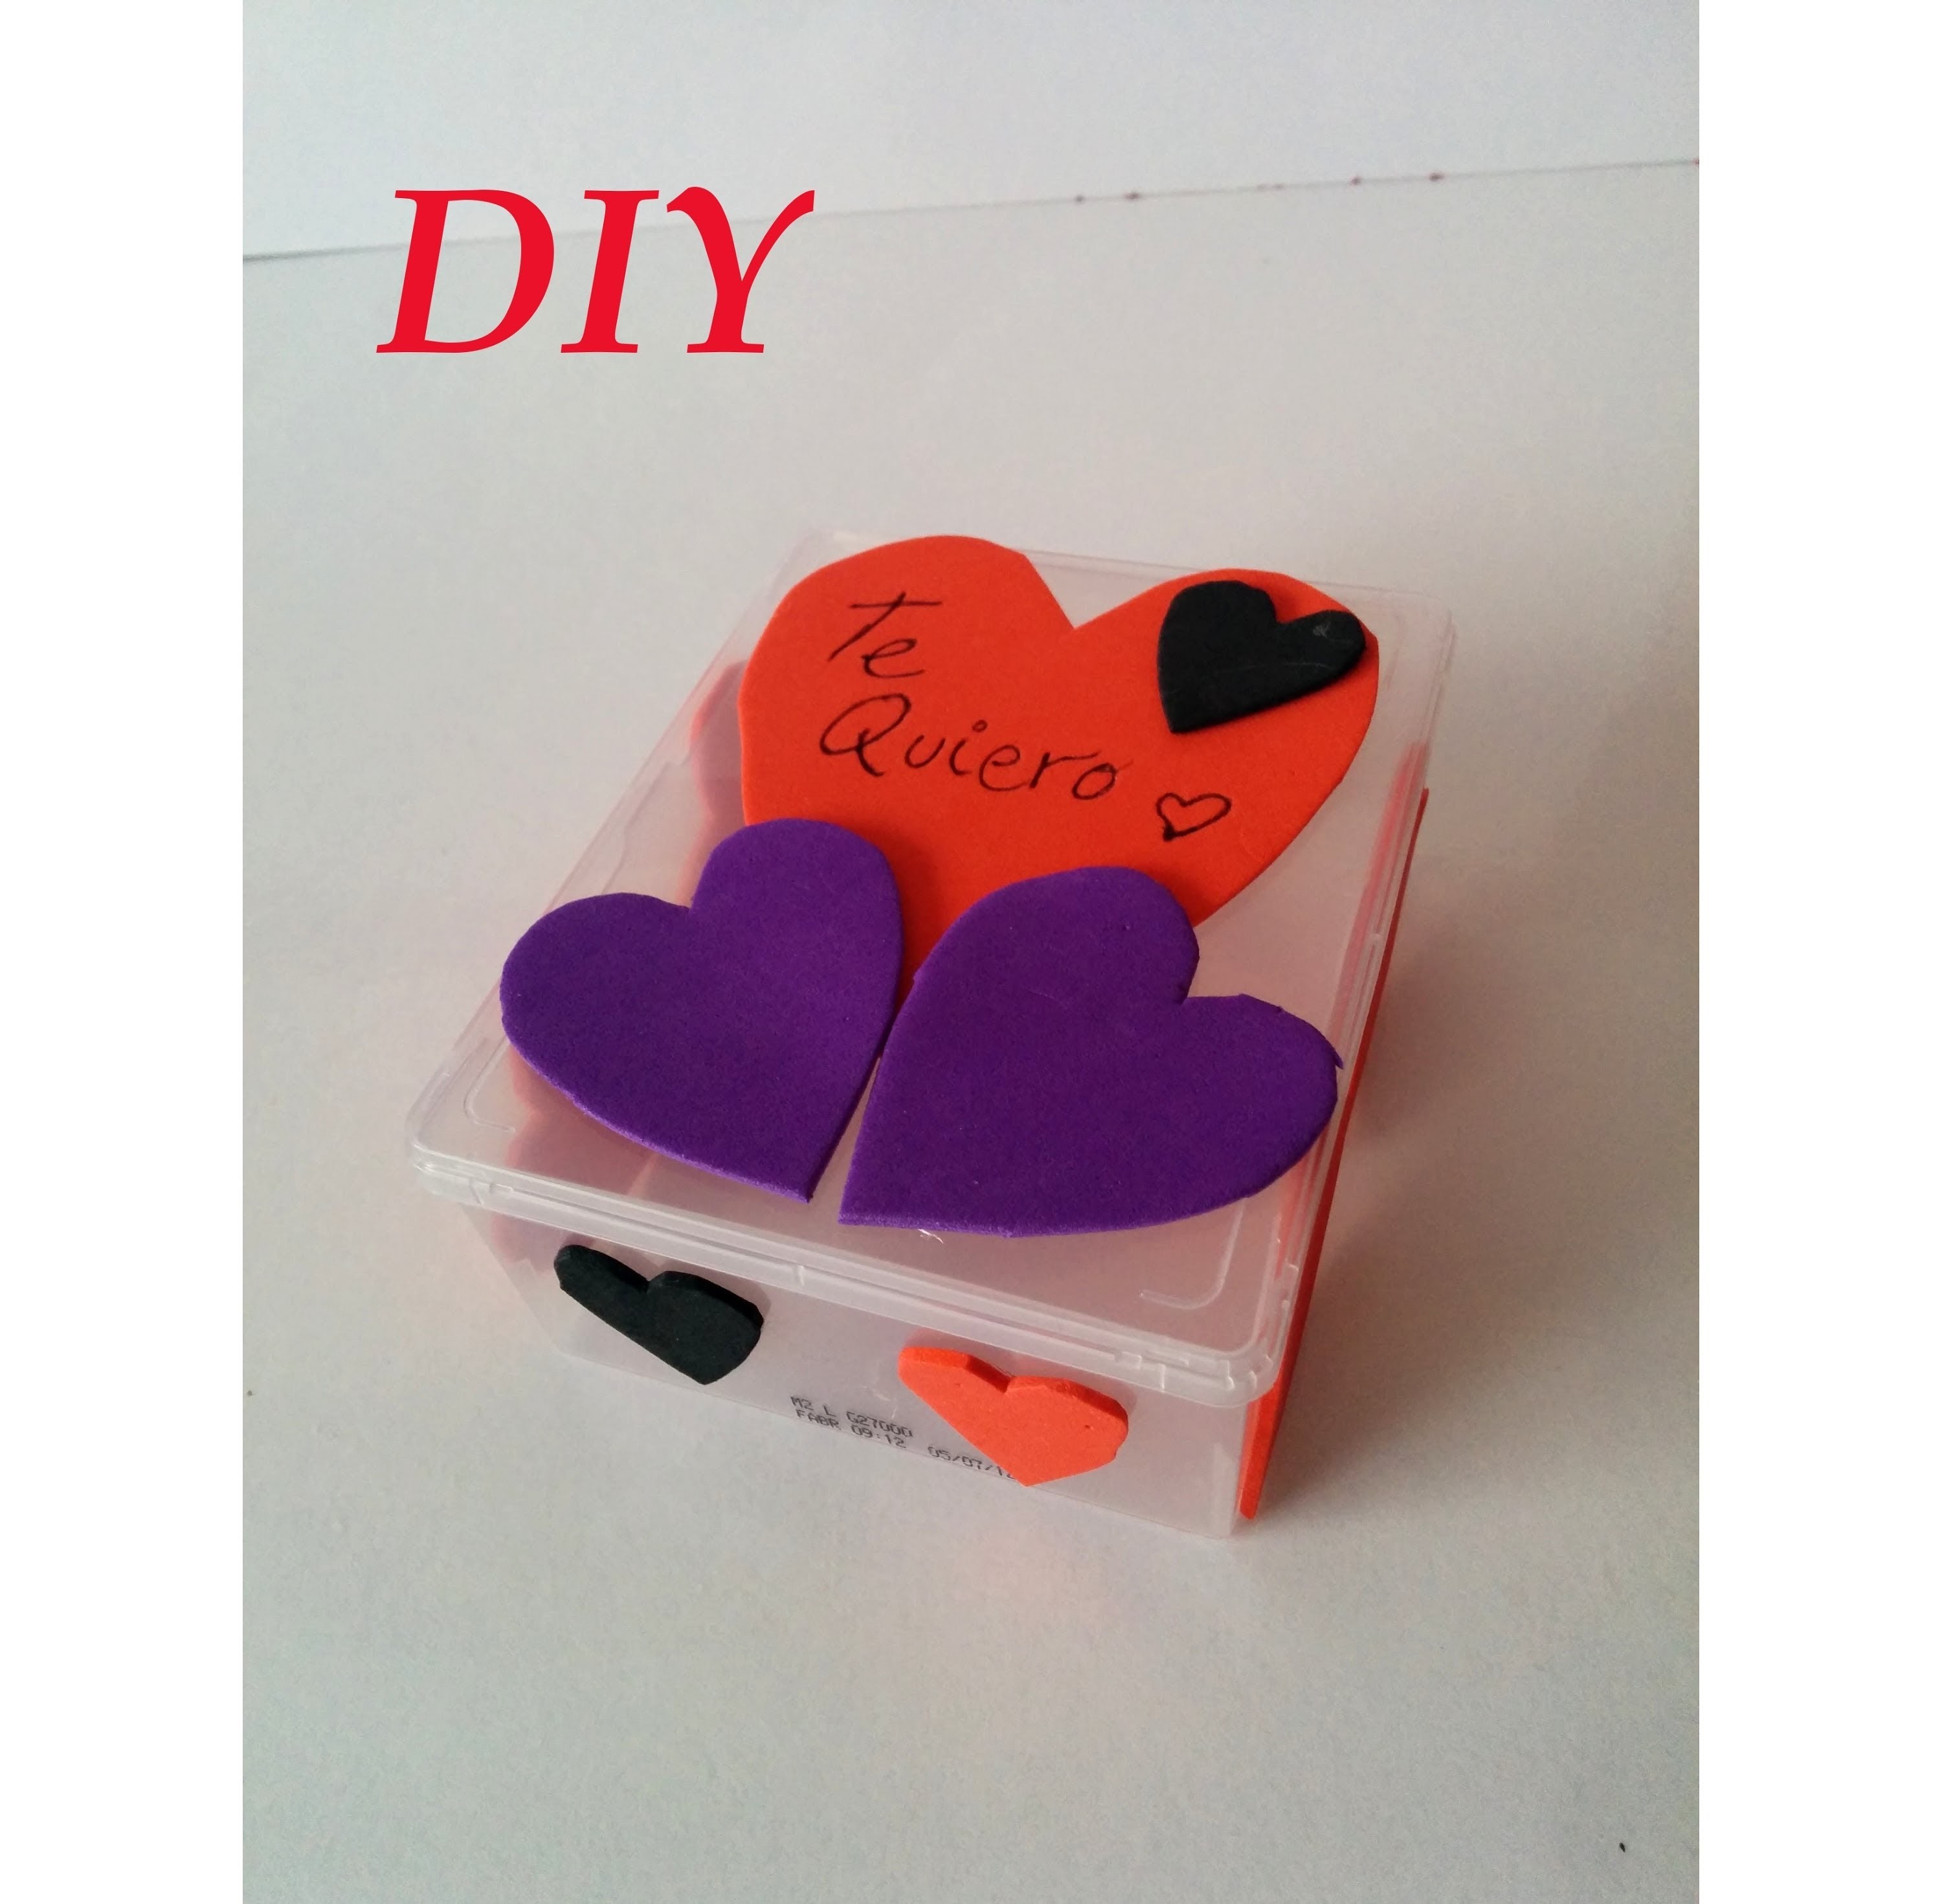 DIY, Como decorar una caja para San Valentín, Decorate box